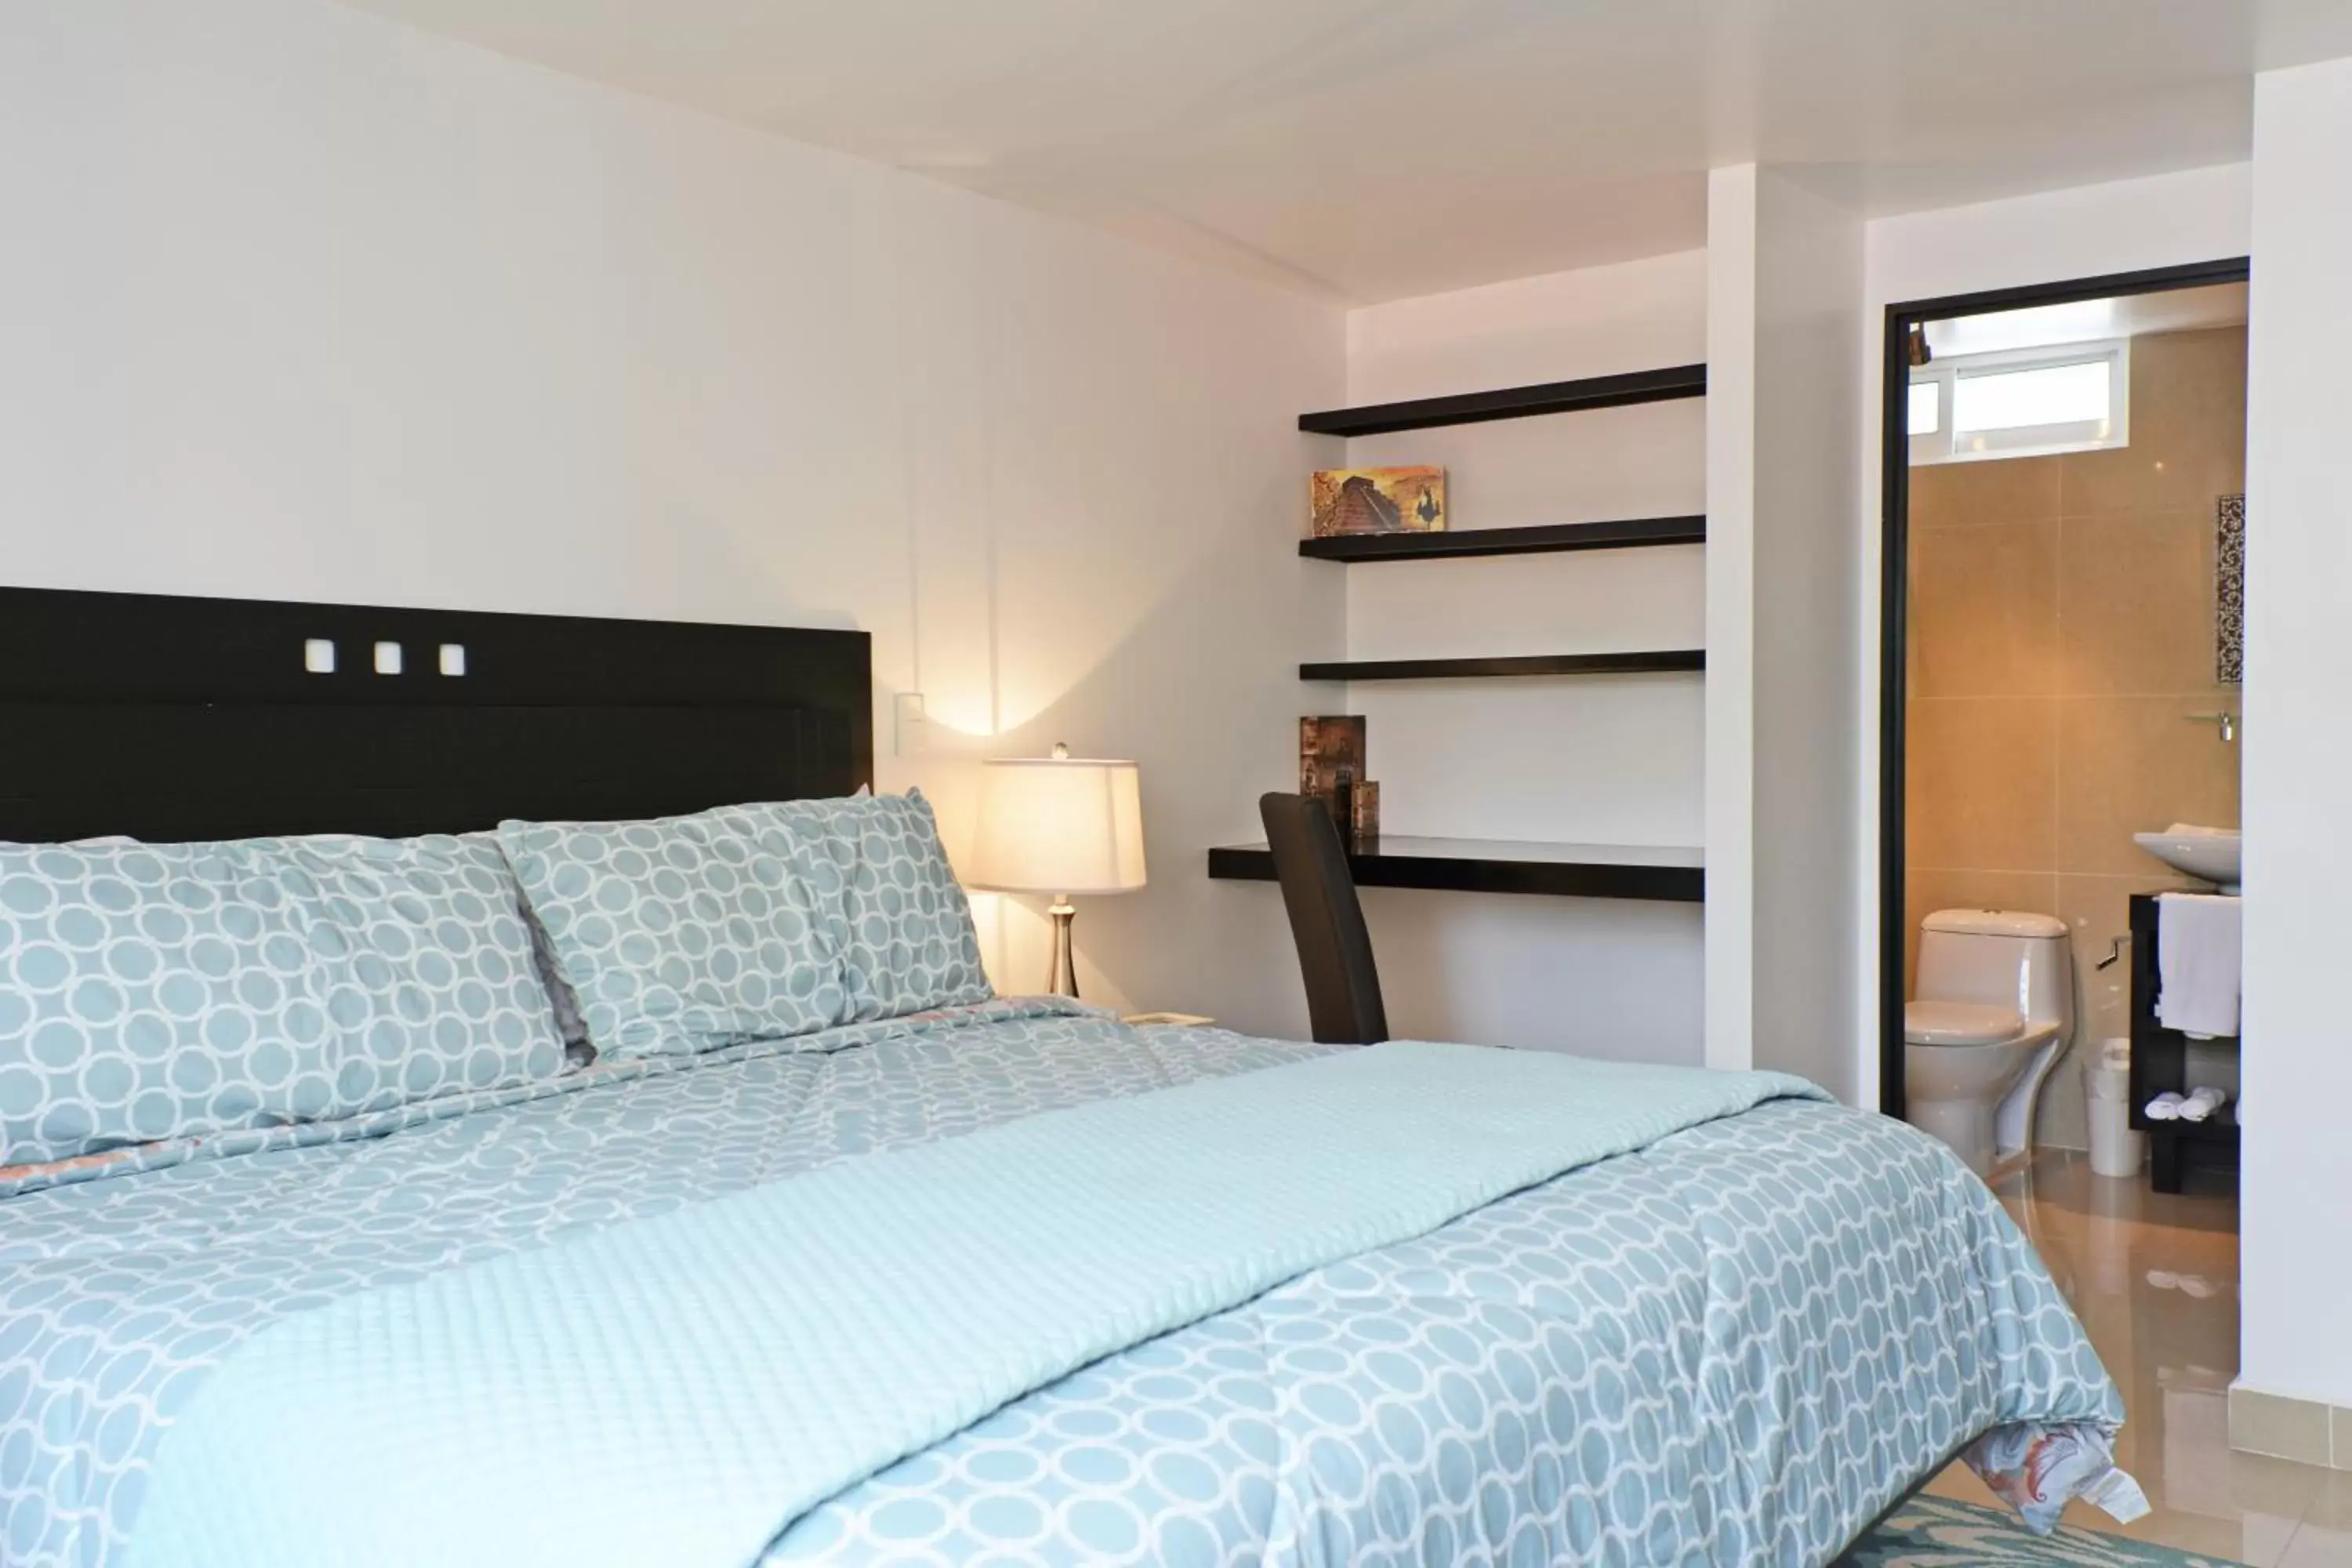 Bedroom, Room Photo in Suites 259 Condesa